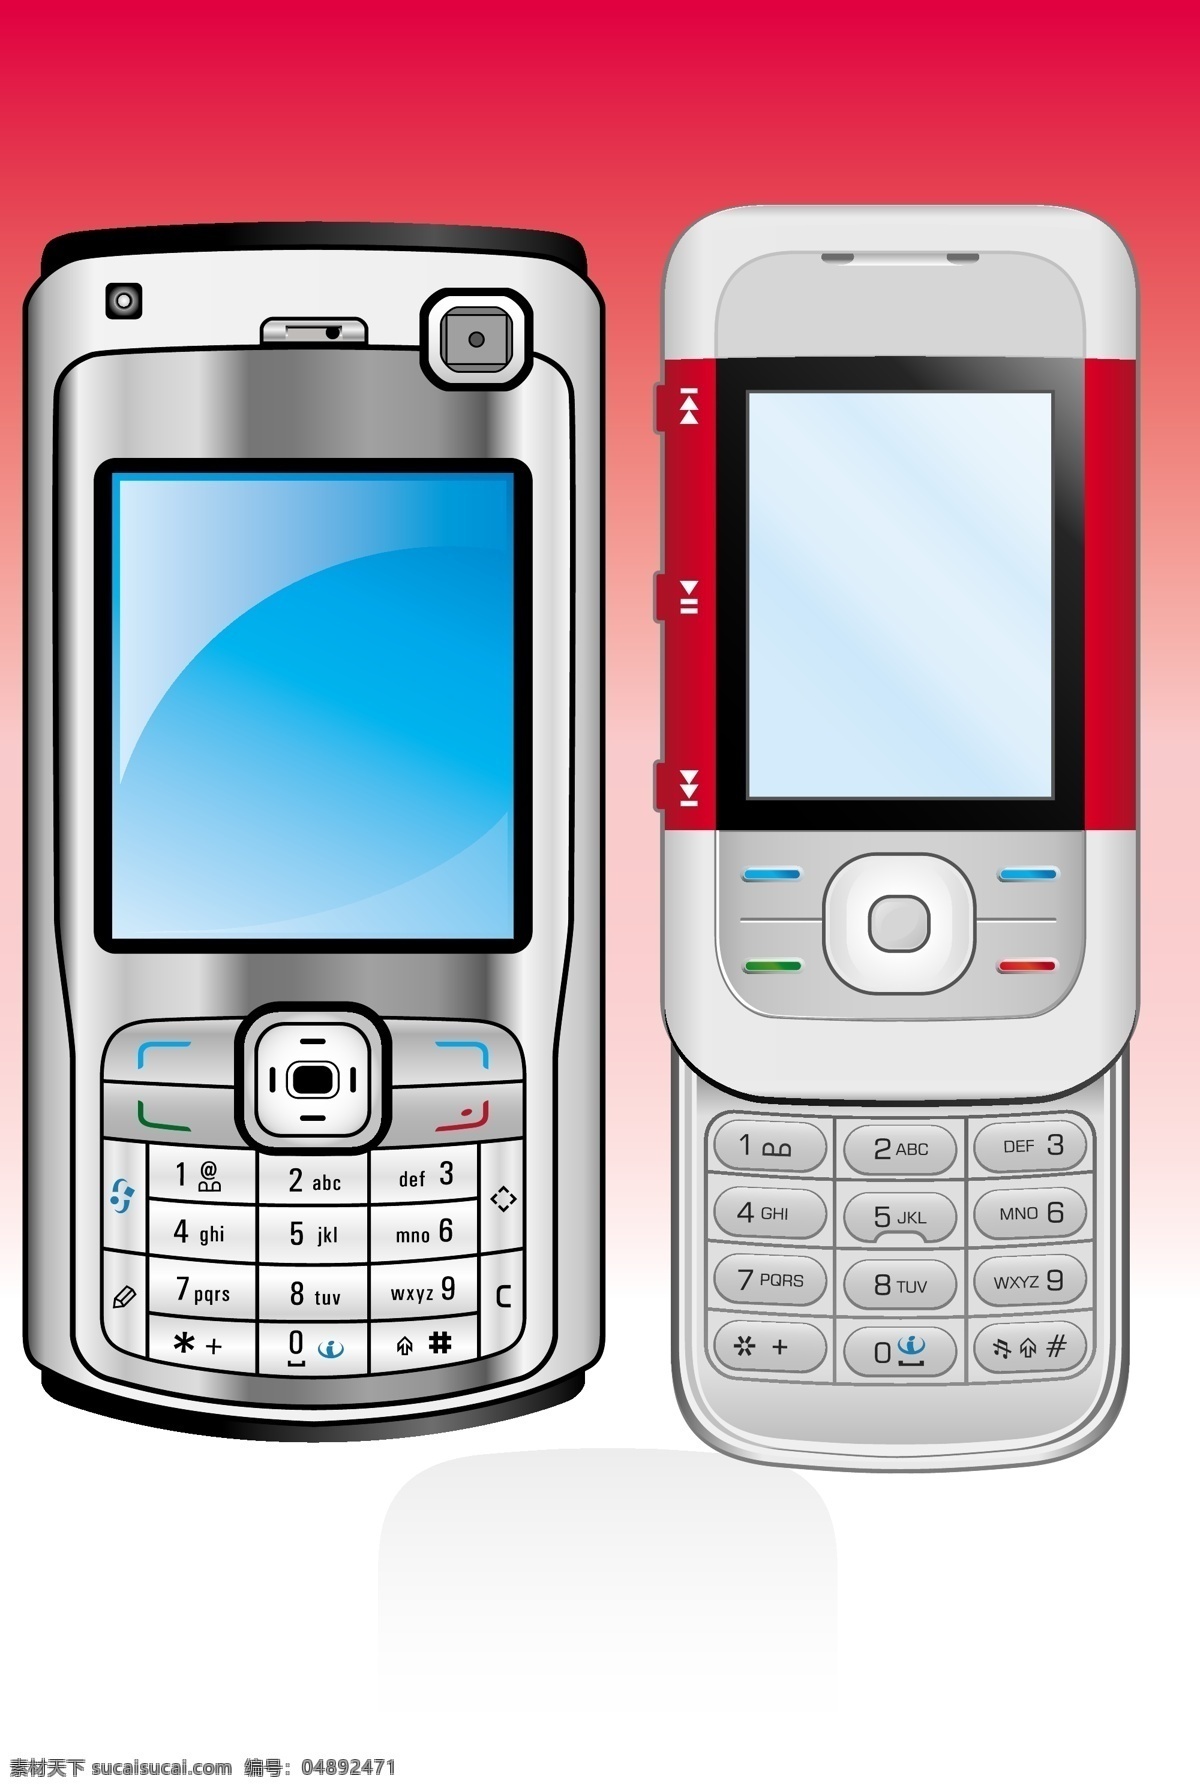 诺基亚 手机 矢量 矢量手机 诺基亚n70 滑盖手机 nokia ipone 移动电话 数码产品 现代科技 通讯科技 矢量图库